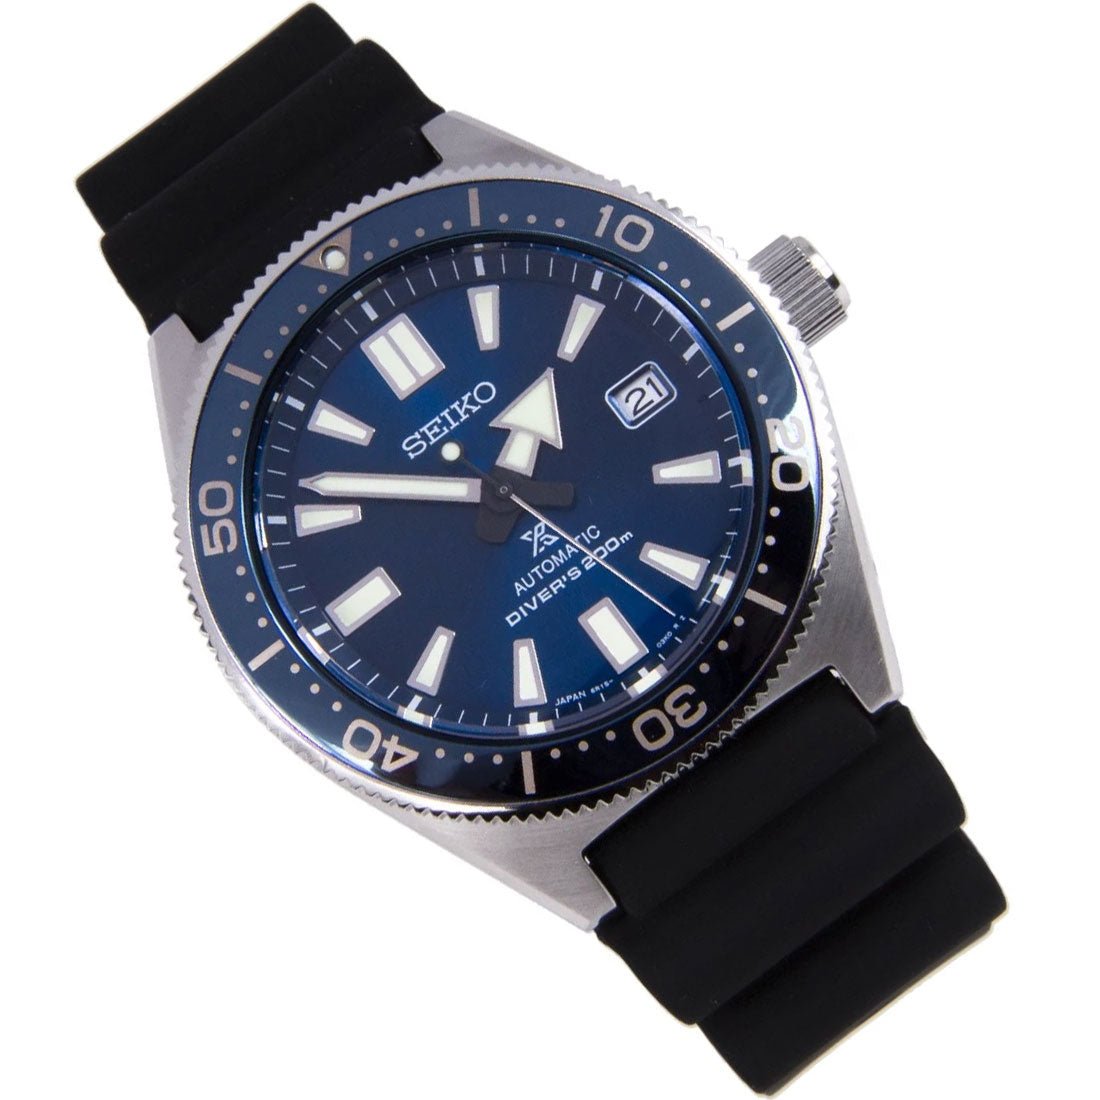 Seiko Prospex Diving JDM Watch SBDC053J SBDC053 SBDC053J1 -Seiko